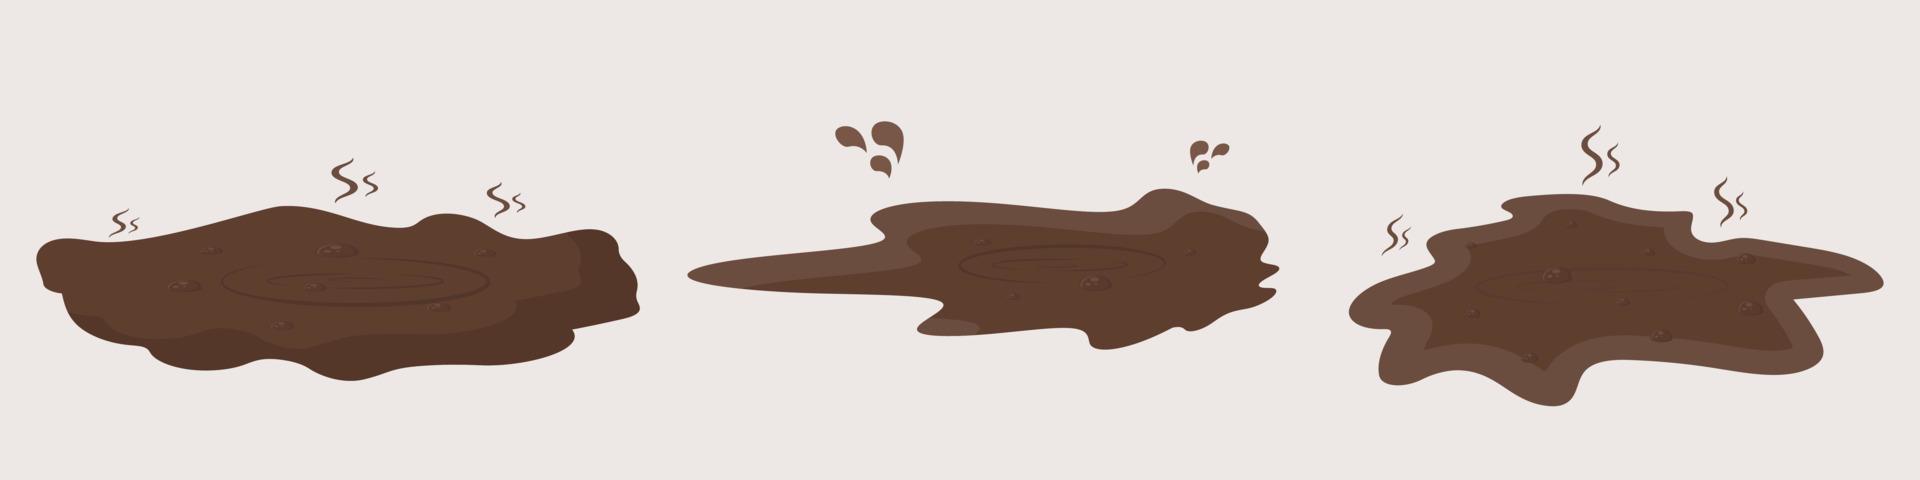 flaques de boue. flaque renversée de surface de couleur chocolat brun éclaboussée de café humide dunks marécages de boue dessinés gouttes vectorielles géométriques. vecteur